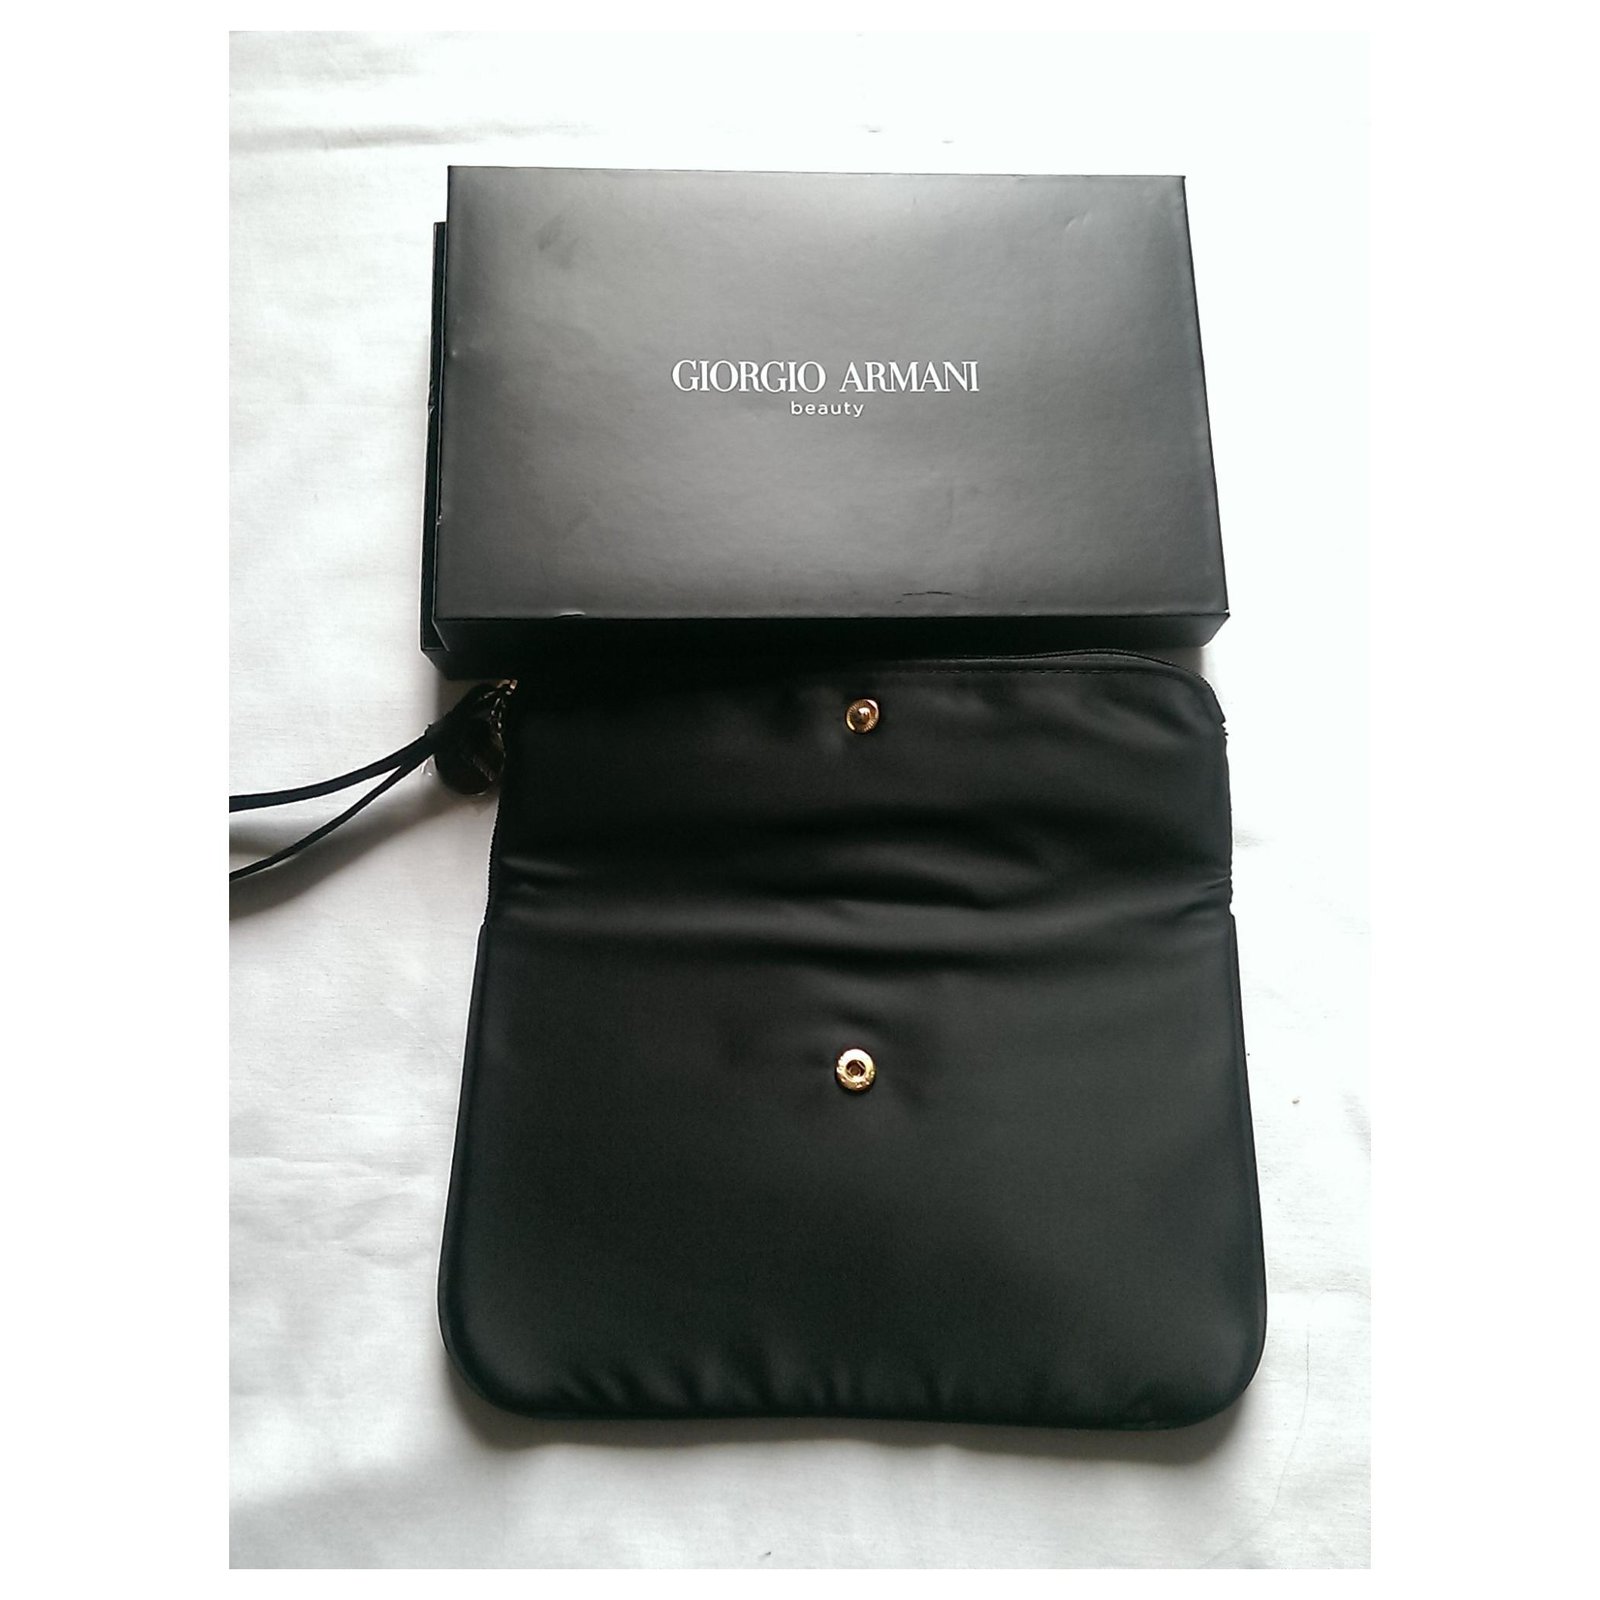 Emporio Armani BORSA - Handbag - black/black - Zalando.de